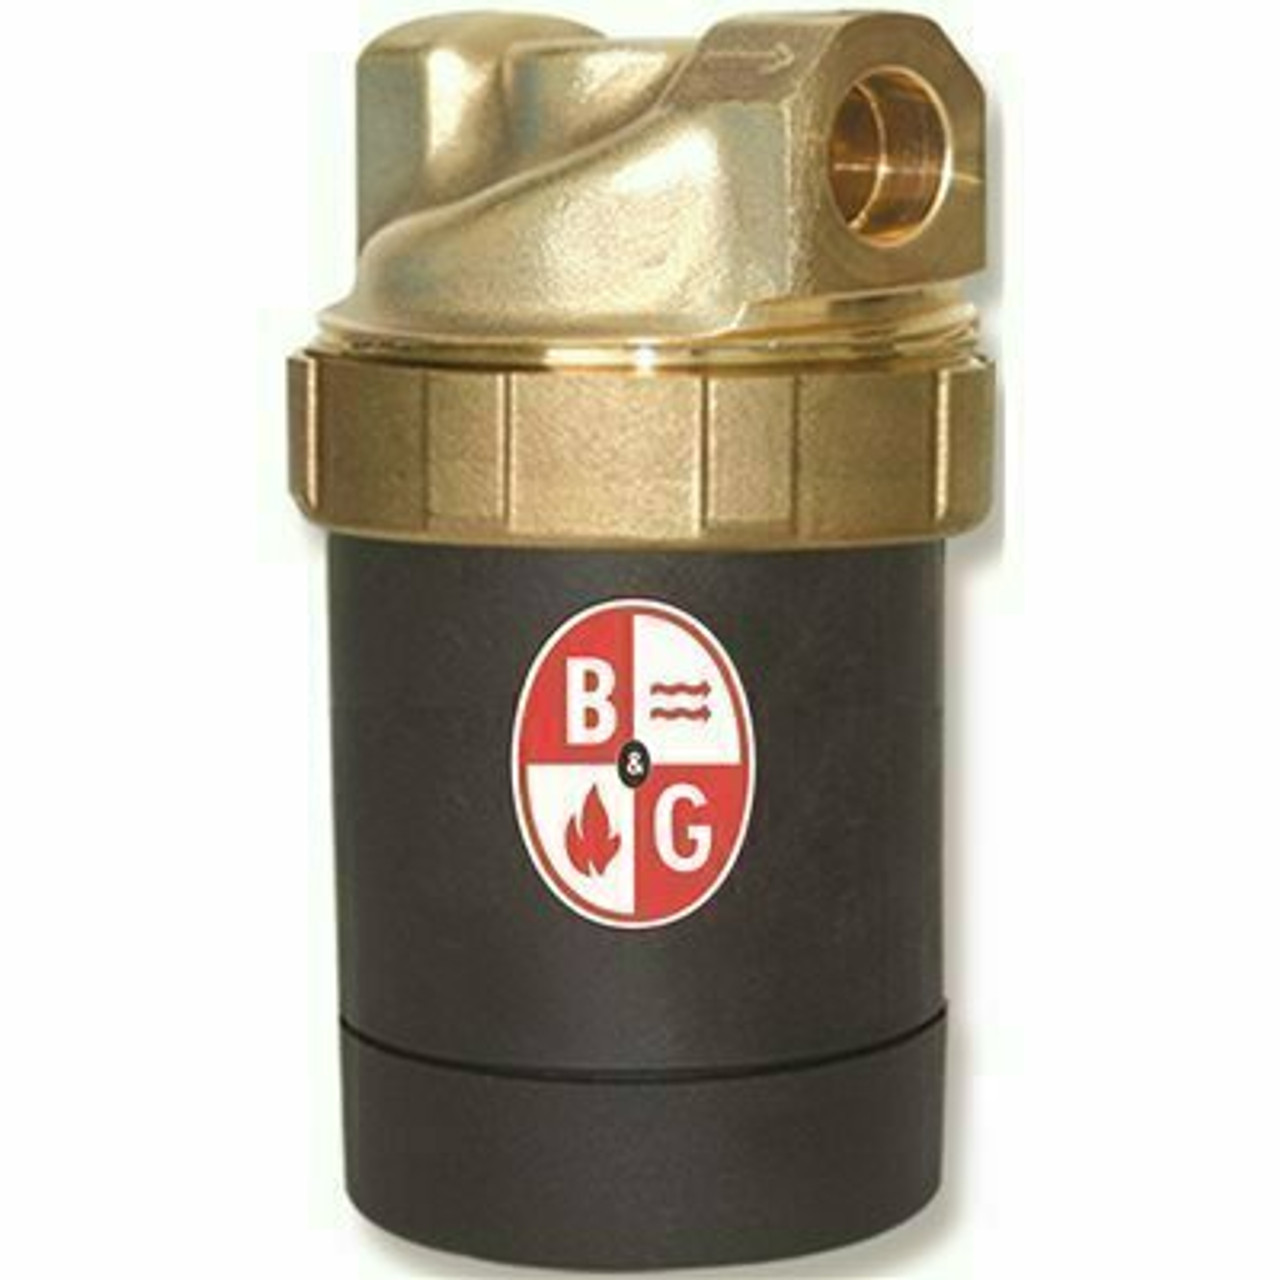 Bell & Gossett Circulator Pump Lead-Free Brass - 109245